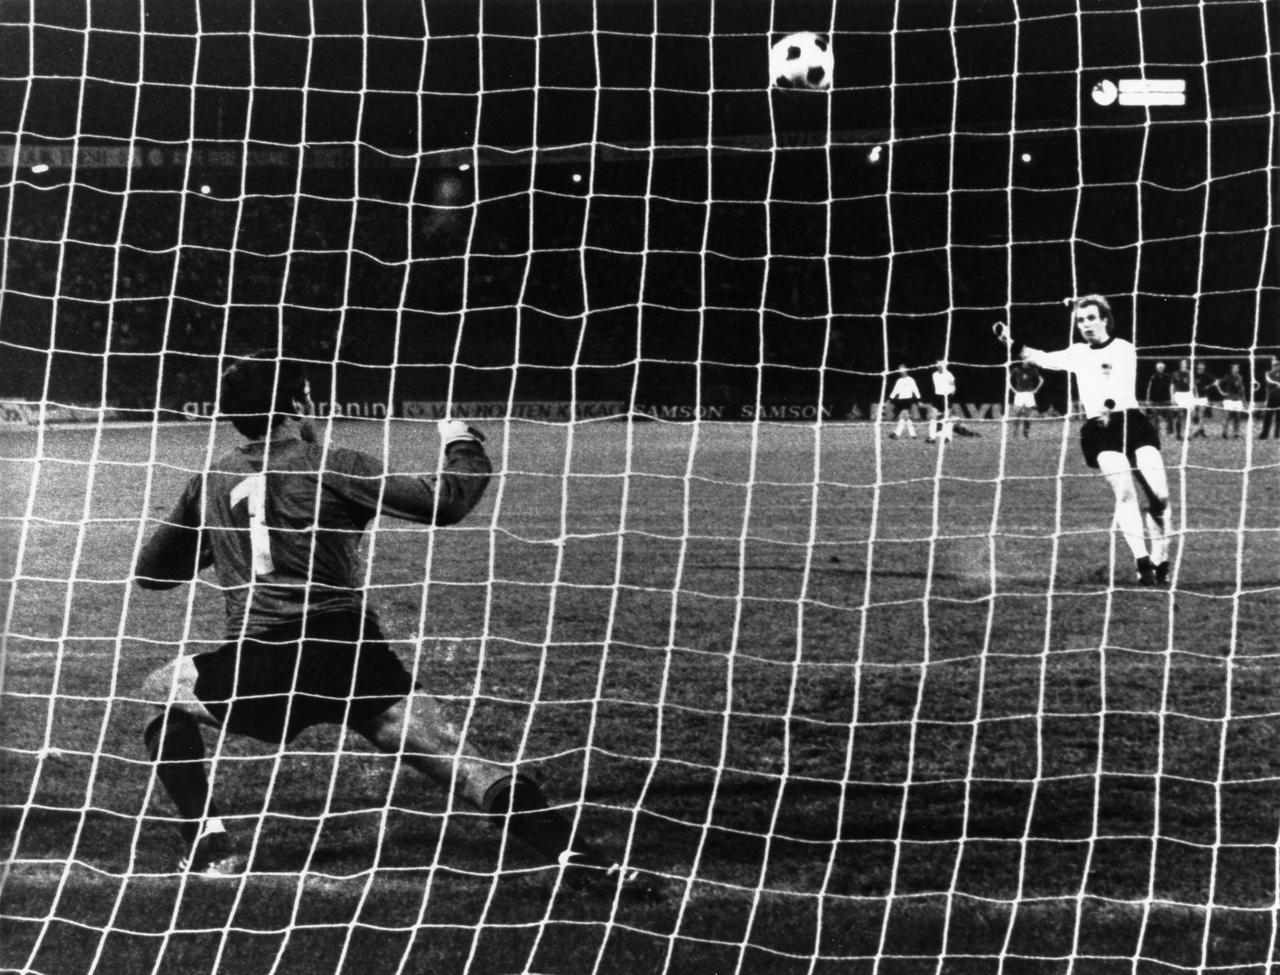 Fussball-EM-Finale 1976 in Belgrad: Tschechoslowakei - BR Deutschland 7:5 n.E. - Elfmeterschiessen: Uli Hoeneß verschiesst beim Stand von 4:3 i.E. seinen Elfmeter gegen Torhueter Ivo Viktor.